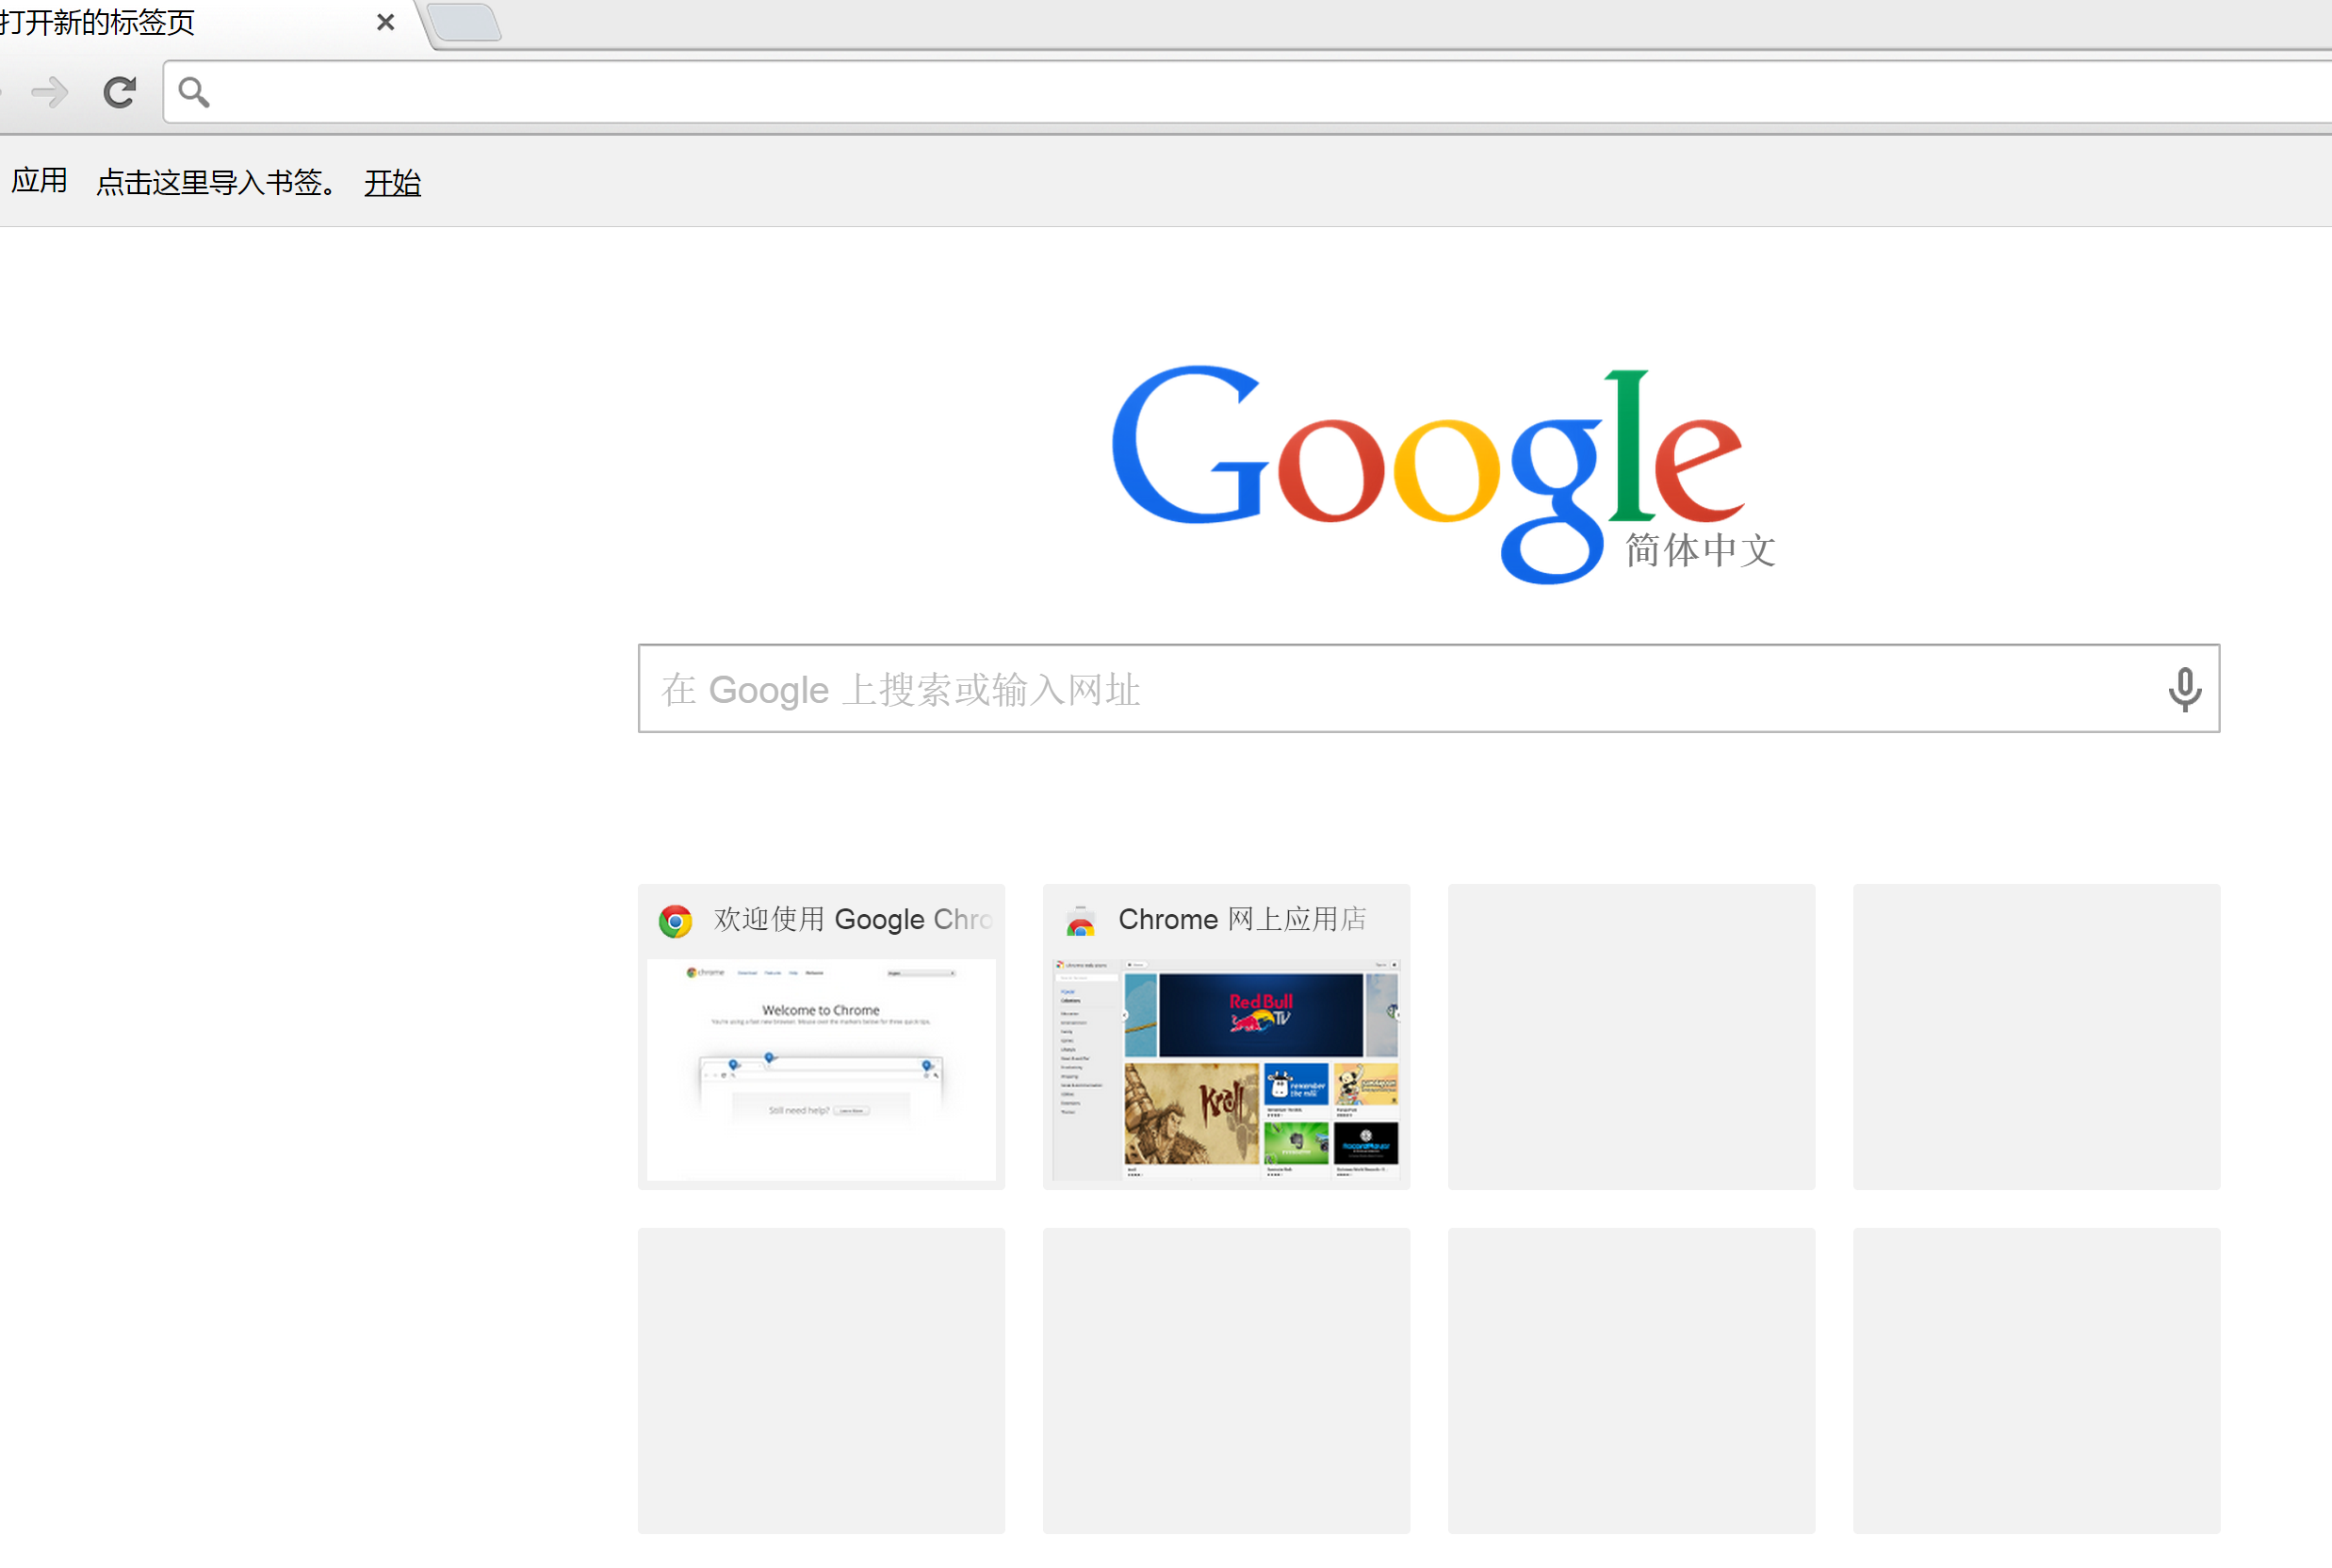 Chrome主页Google搜索被改为Bing怎么办? - 